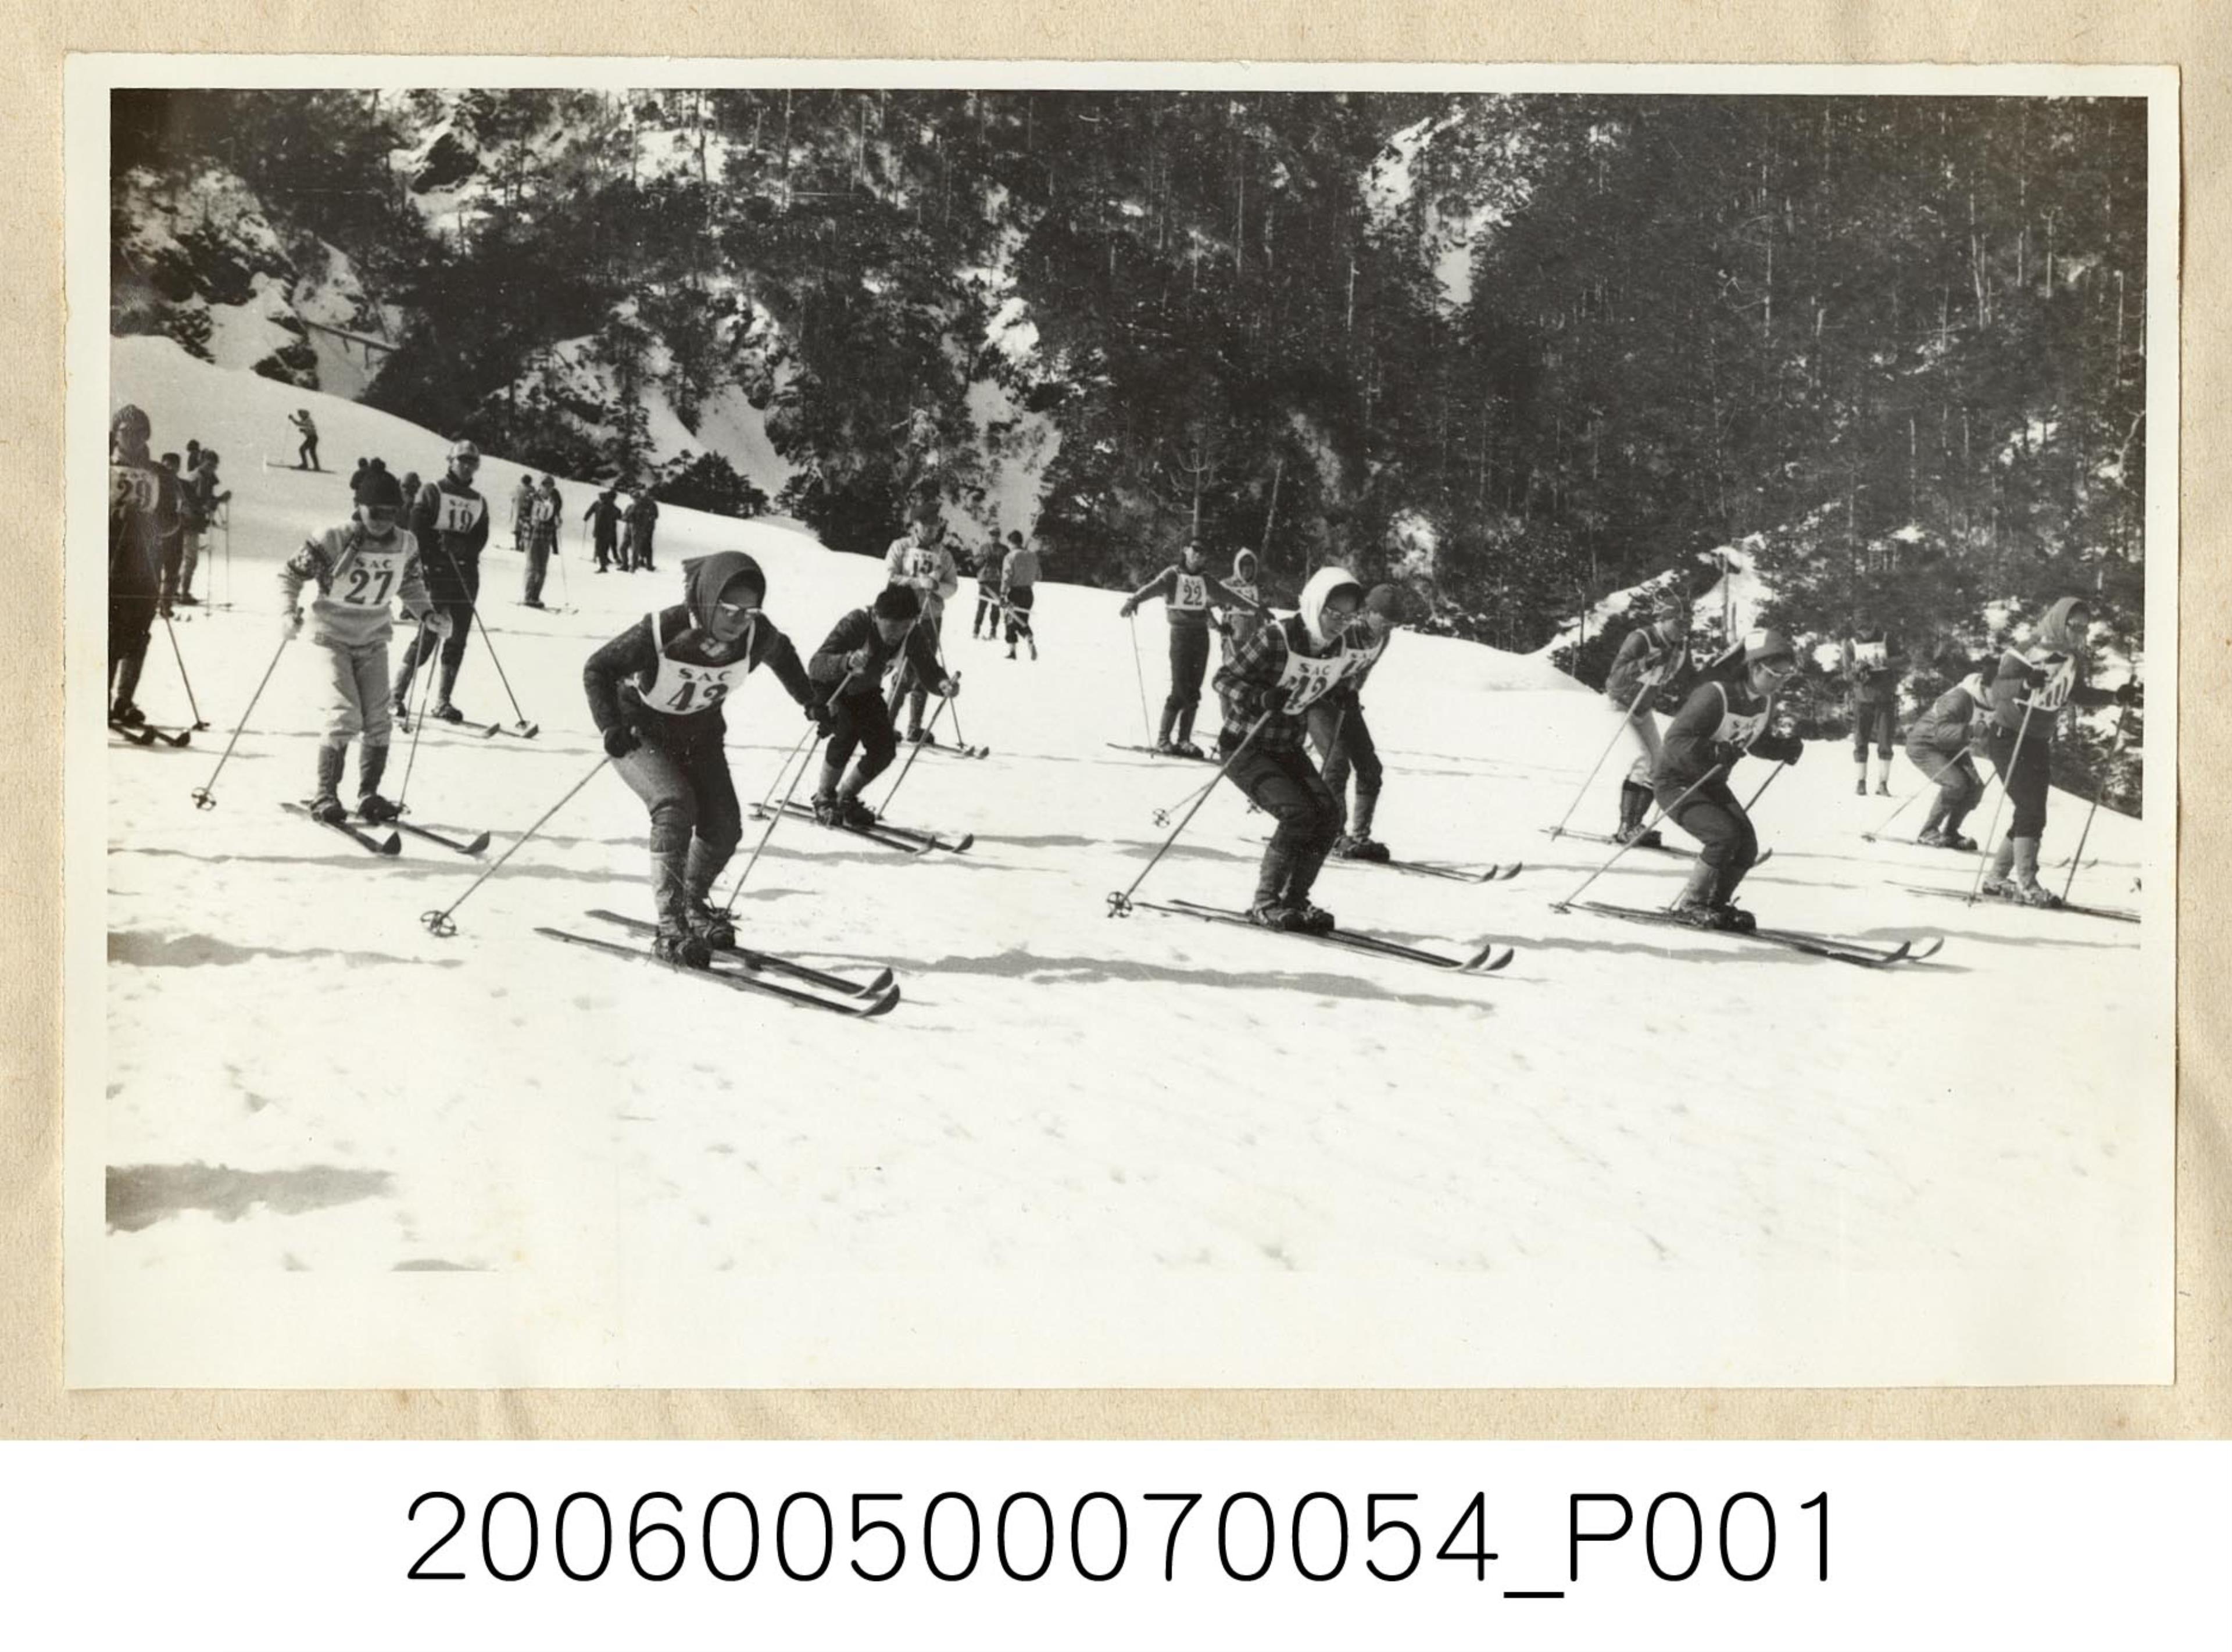 《華僑通訊社新聞照片集》〈參加合歡山冬令營的僑生同學正作滑雪運動練習〉 (共1張)